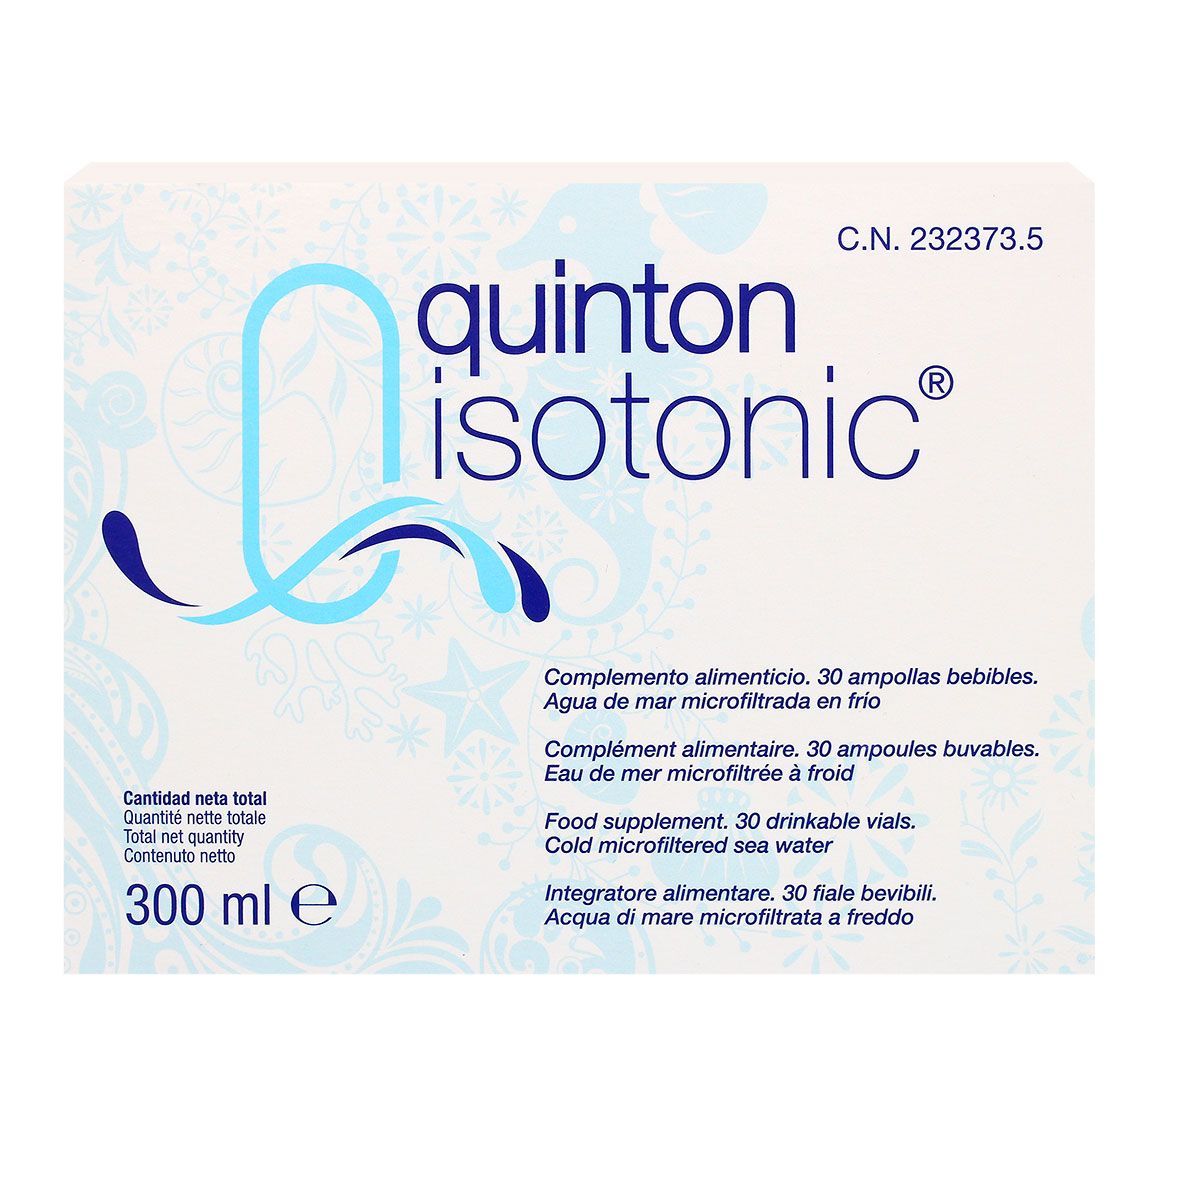 Isotonic Quinton est un complément alimentaire à base d'eau de mer